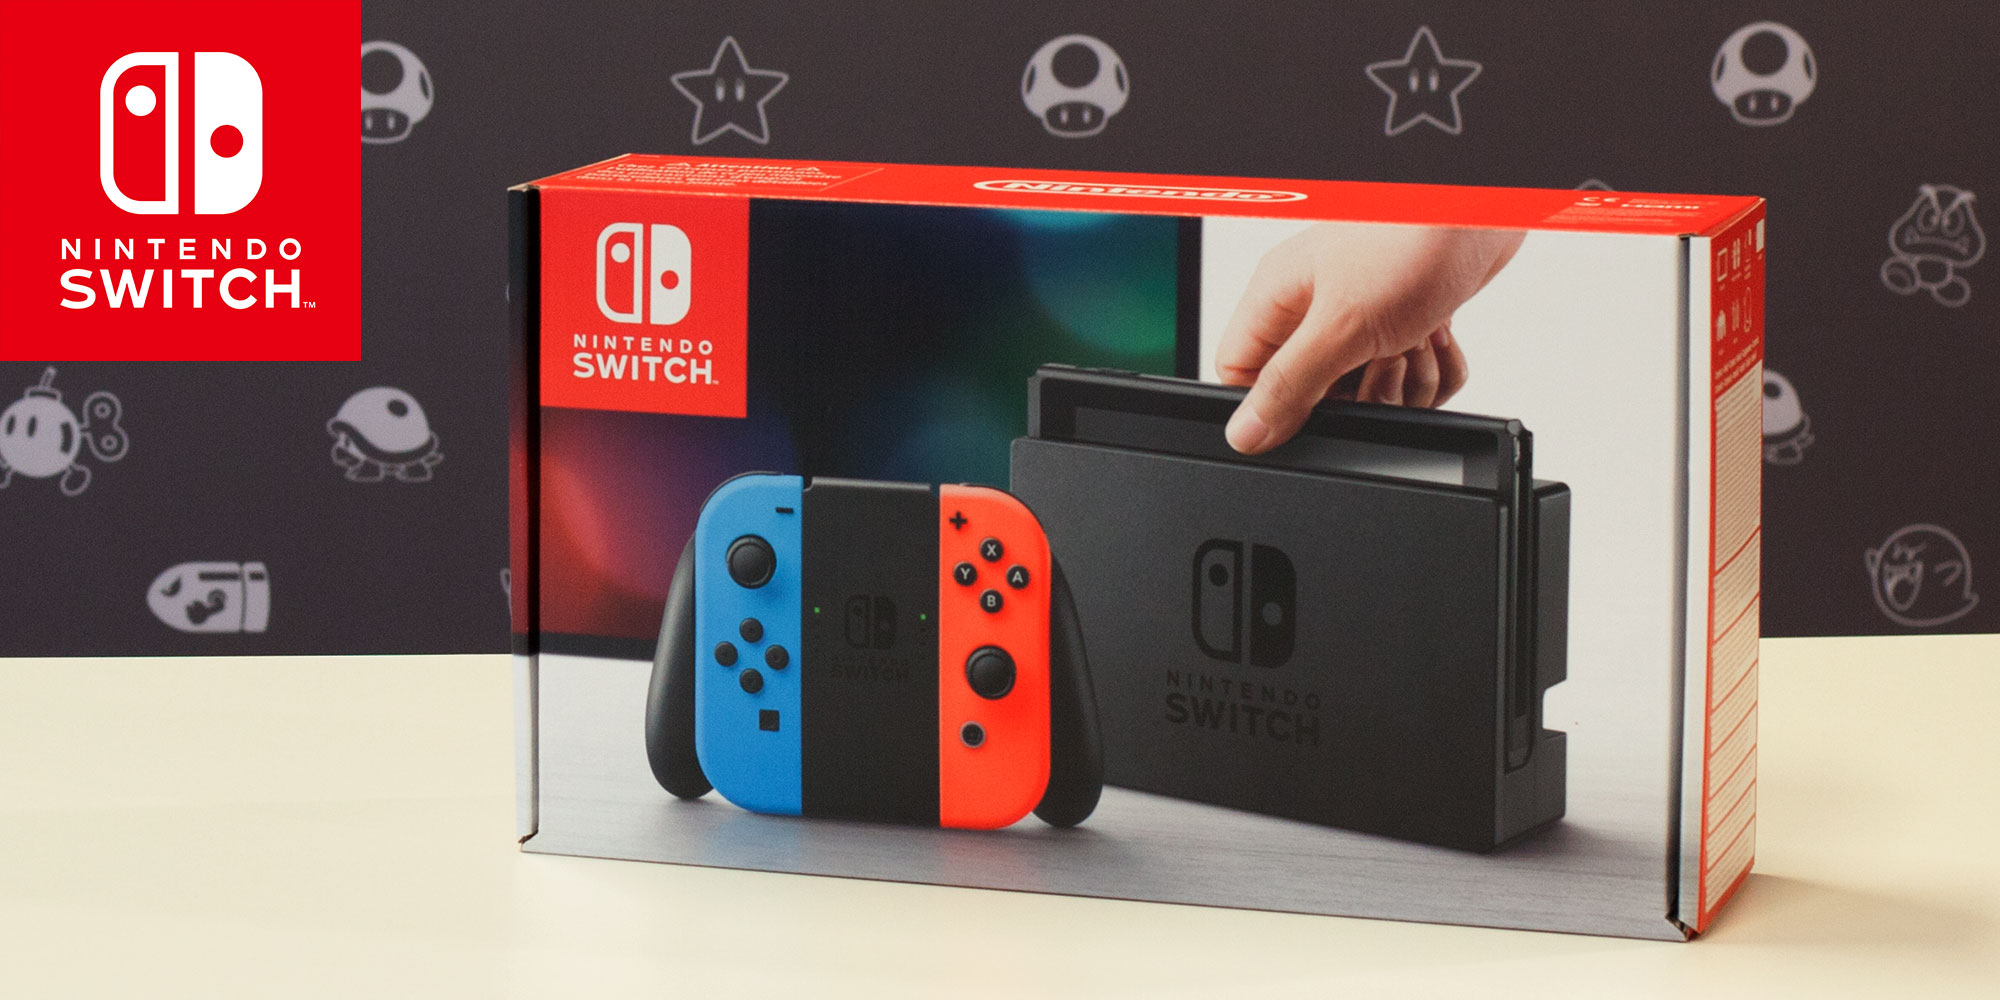 Découvrez ce que renferme la boîte de la Nintendo Switch avec M. Shibata !